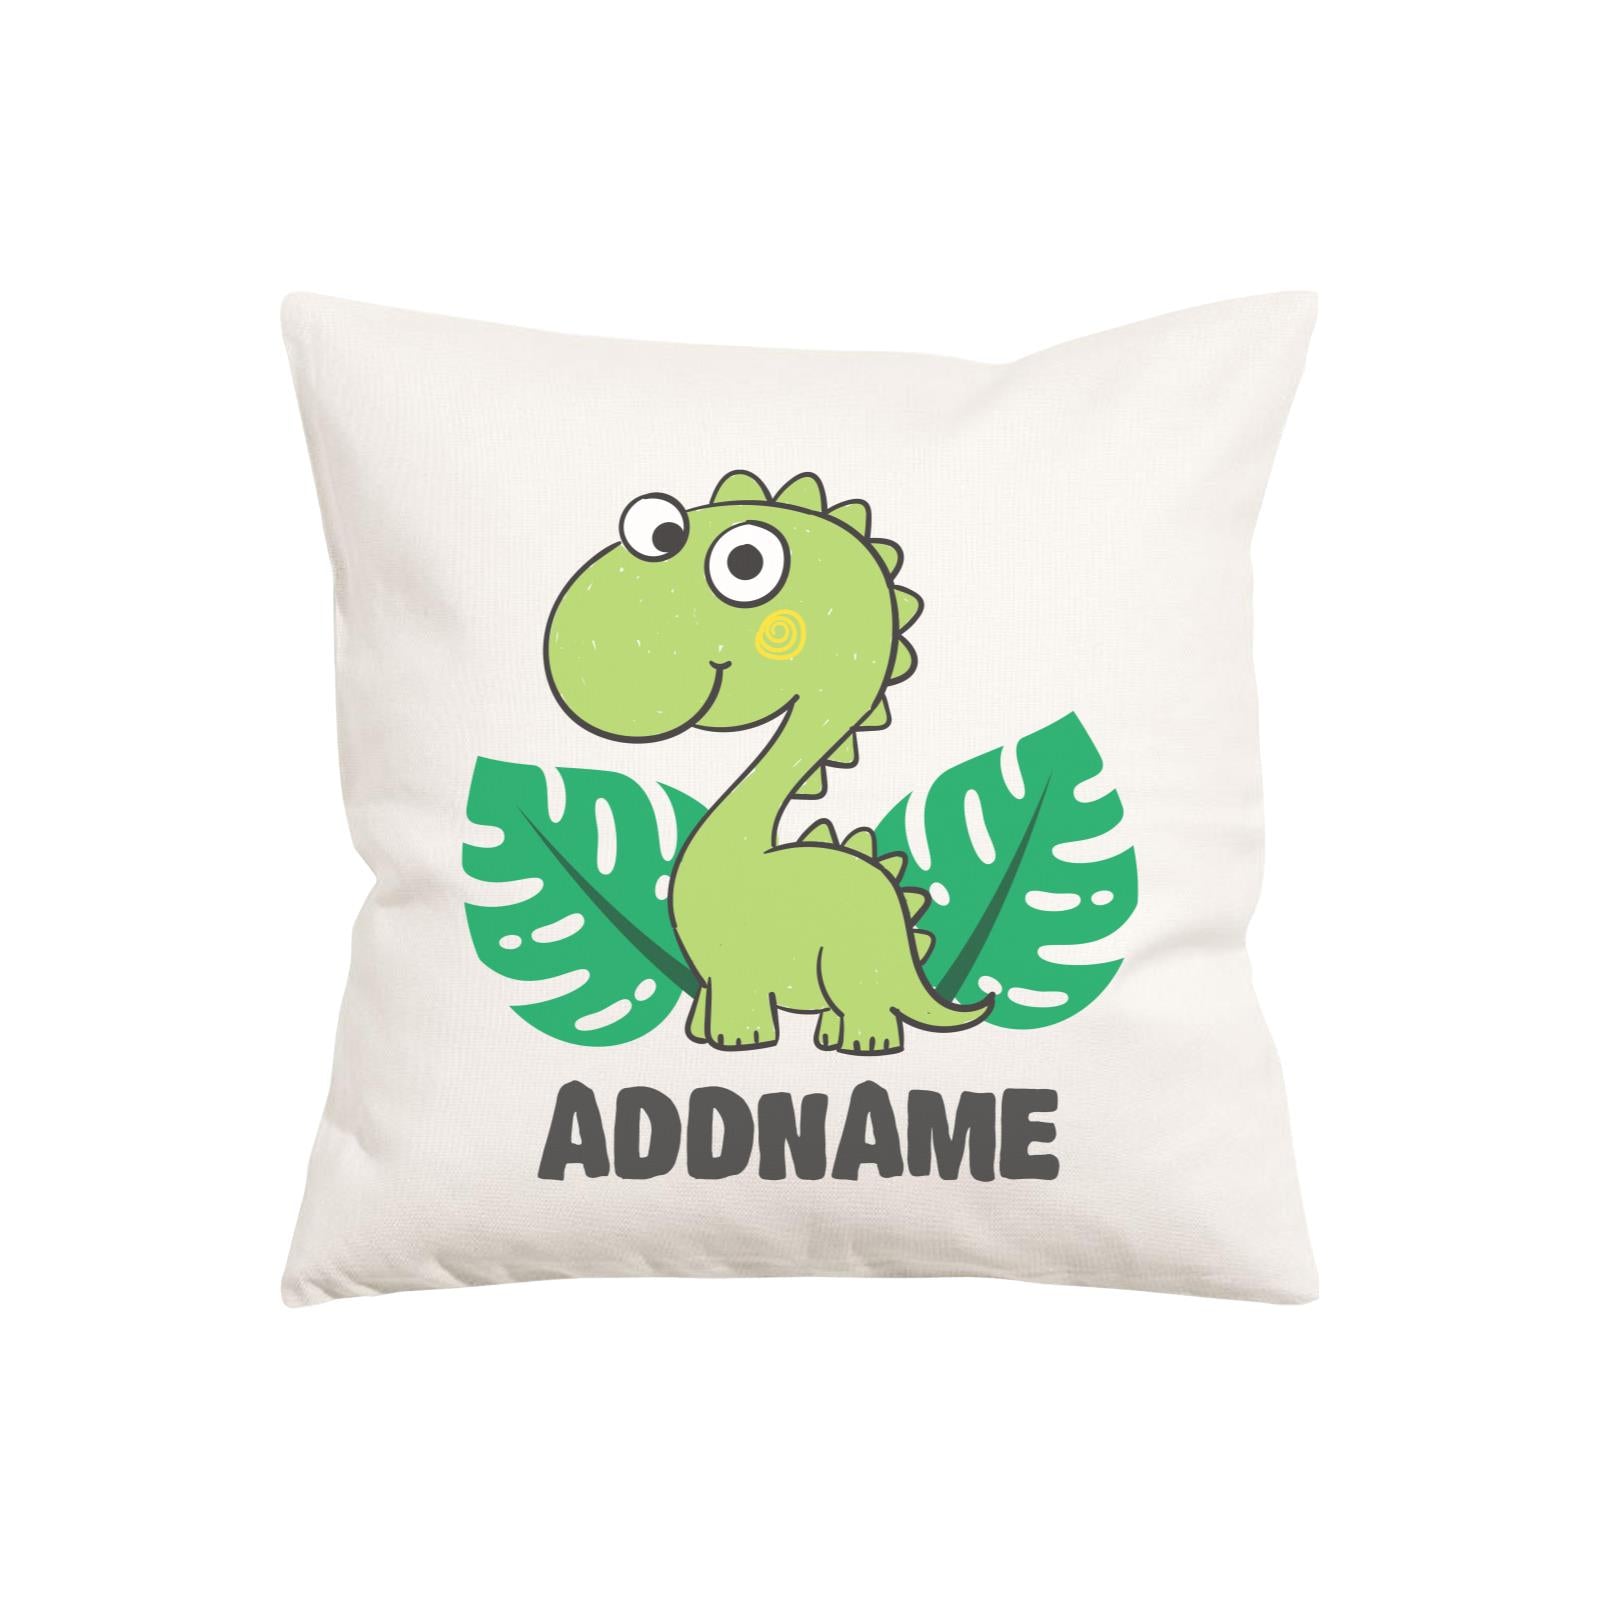 Super Cute Dinosaur With Green Leaves Pillow Cushion